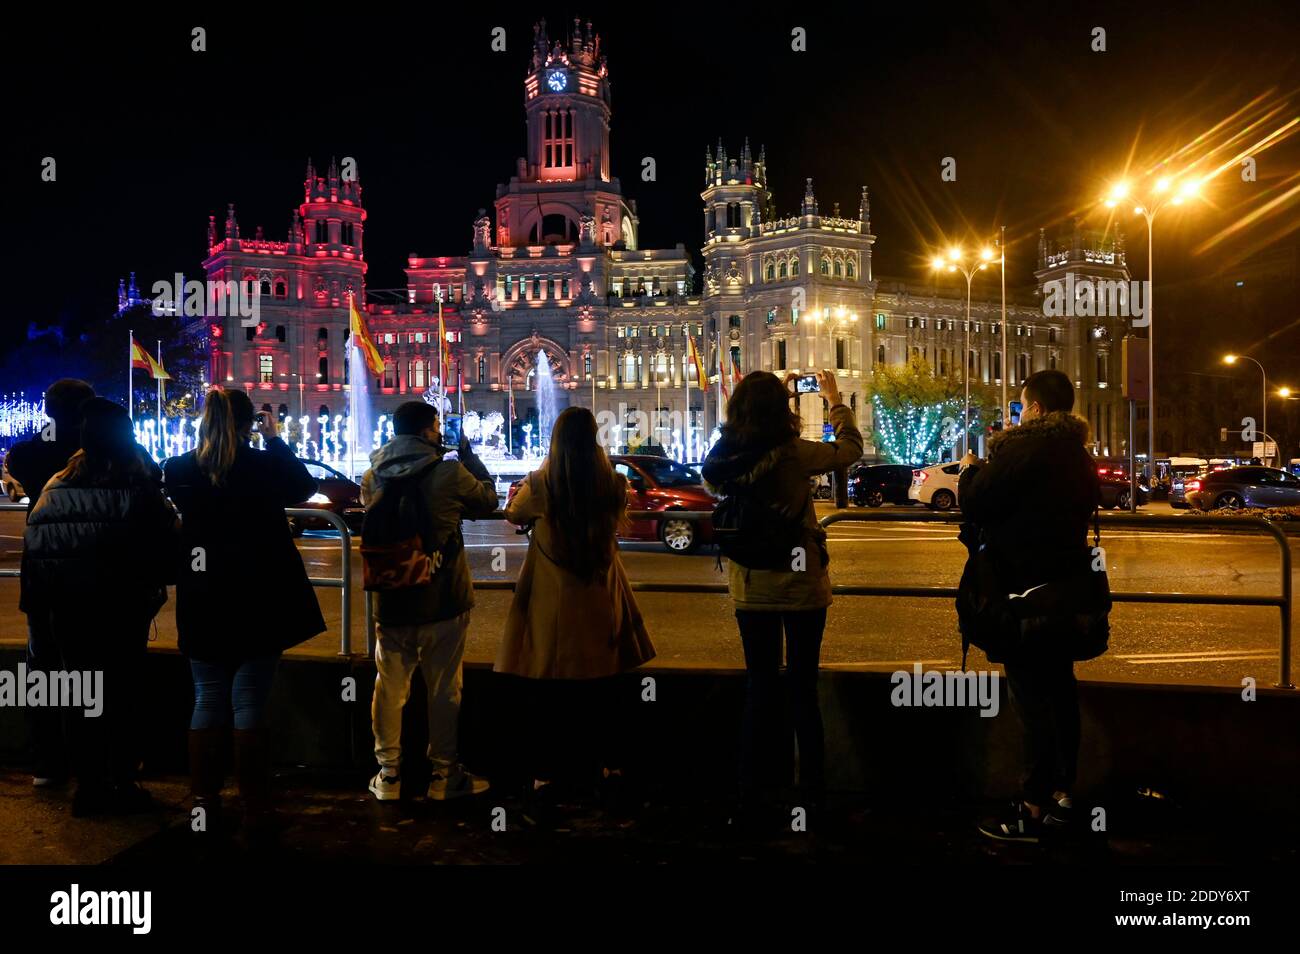 Madrid, Spanien. November 2020. Der Palacio de Cibeles, wenn die traditionelle Weihafterts-Beleuchtung im Stadtzentrum eingeschaltet wird. Madrid 11/26/2020 Quelle: dpa/Alamy Live News Stockfoto